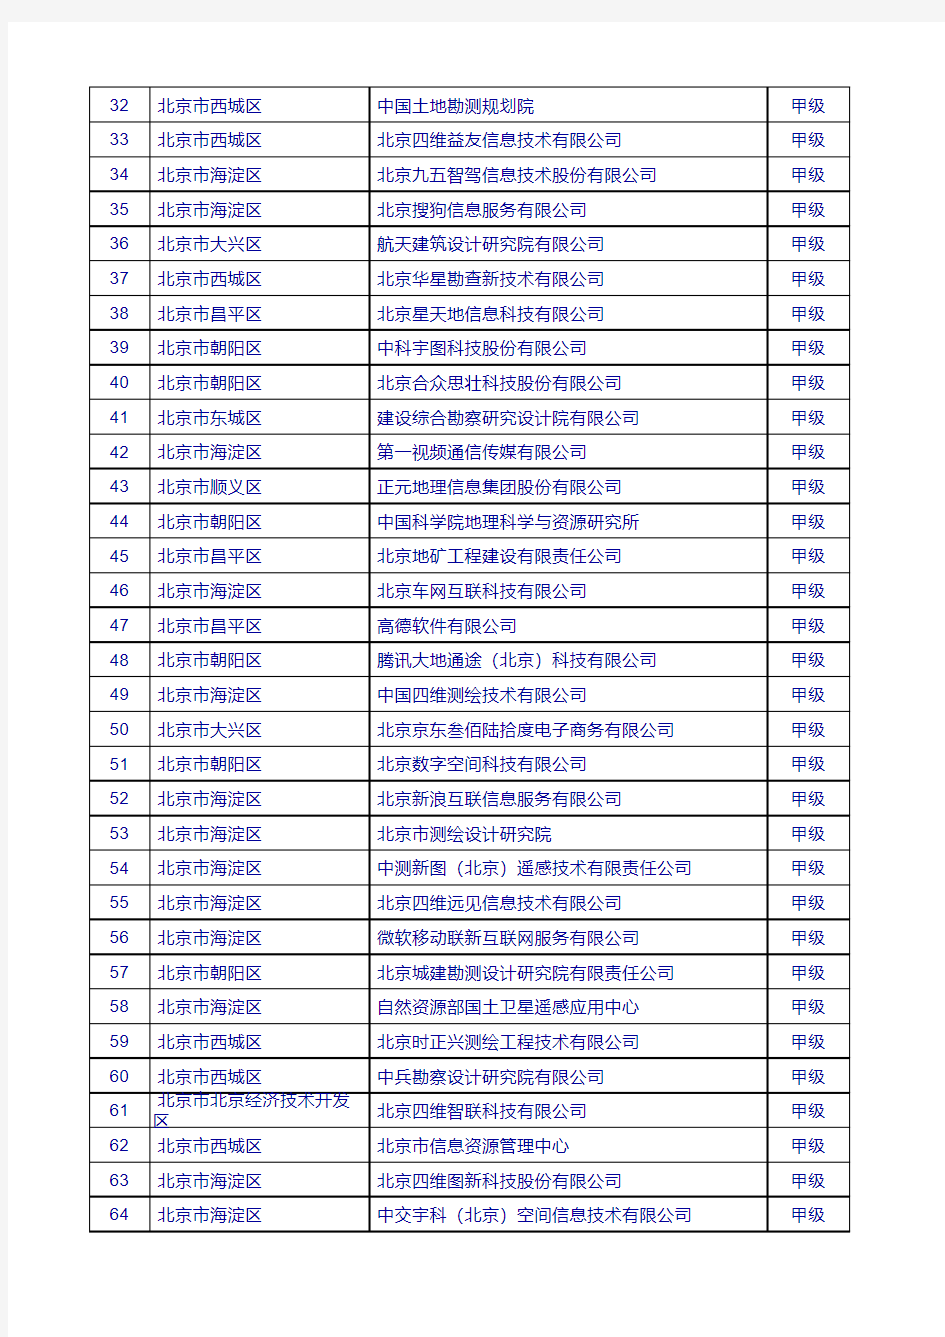 北京市甲级测绘单位名录